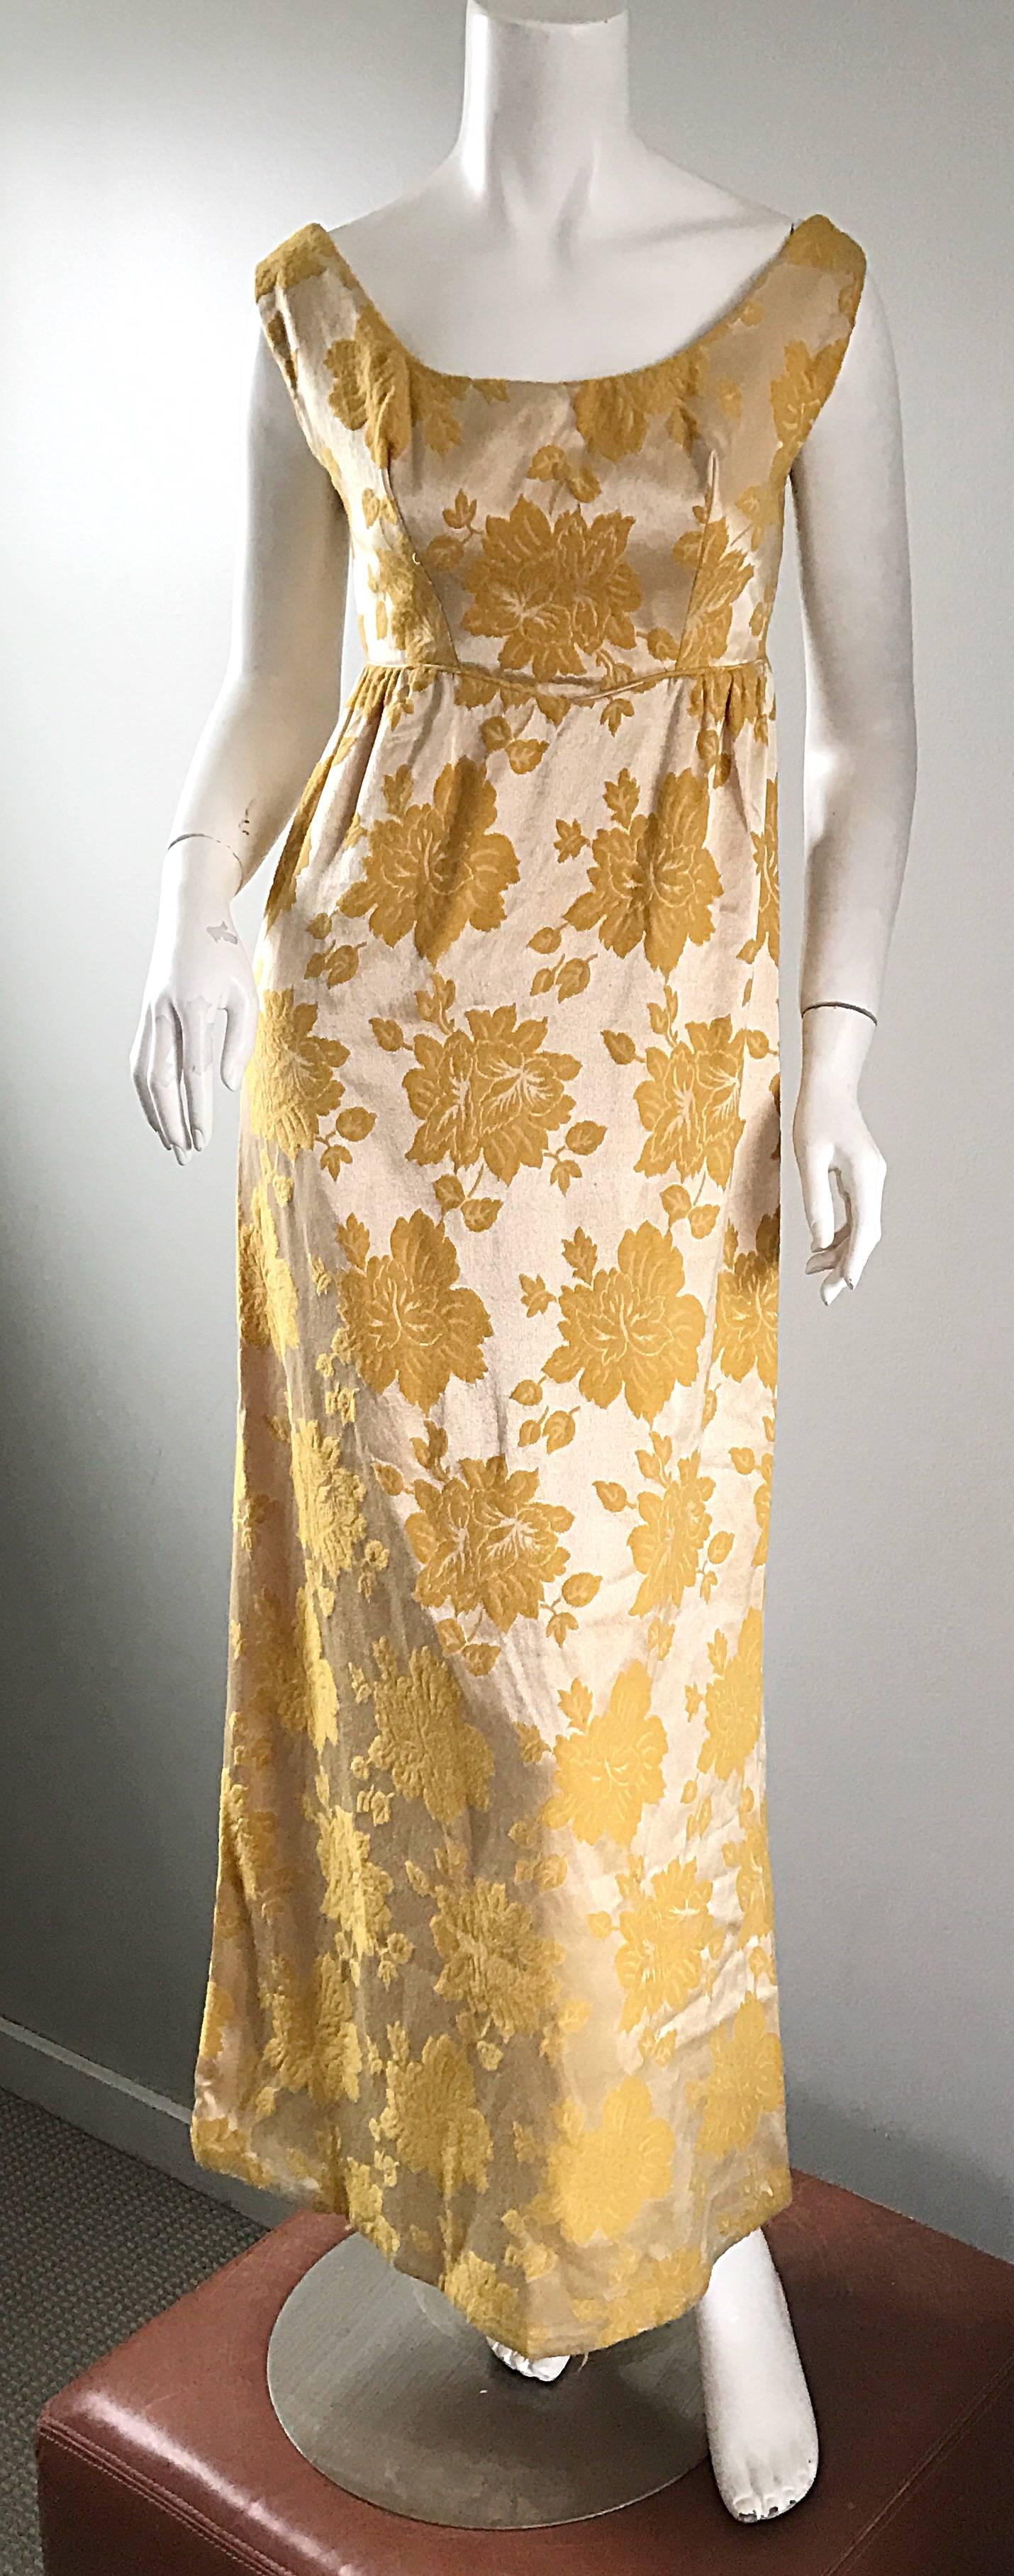 Wunderschönes Kleid aus goldfarbener und marmorgelber Blumenseide aus den 1960er Jahren! Wunderschönes, figurbetontes Mieder, das leicht über der Schulter sitzt, mit einem Säulenrock. Floraler Druck, mit leicht glänzendem Hintergrund. Regal, und